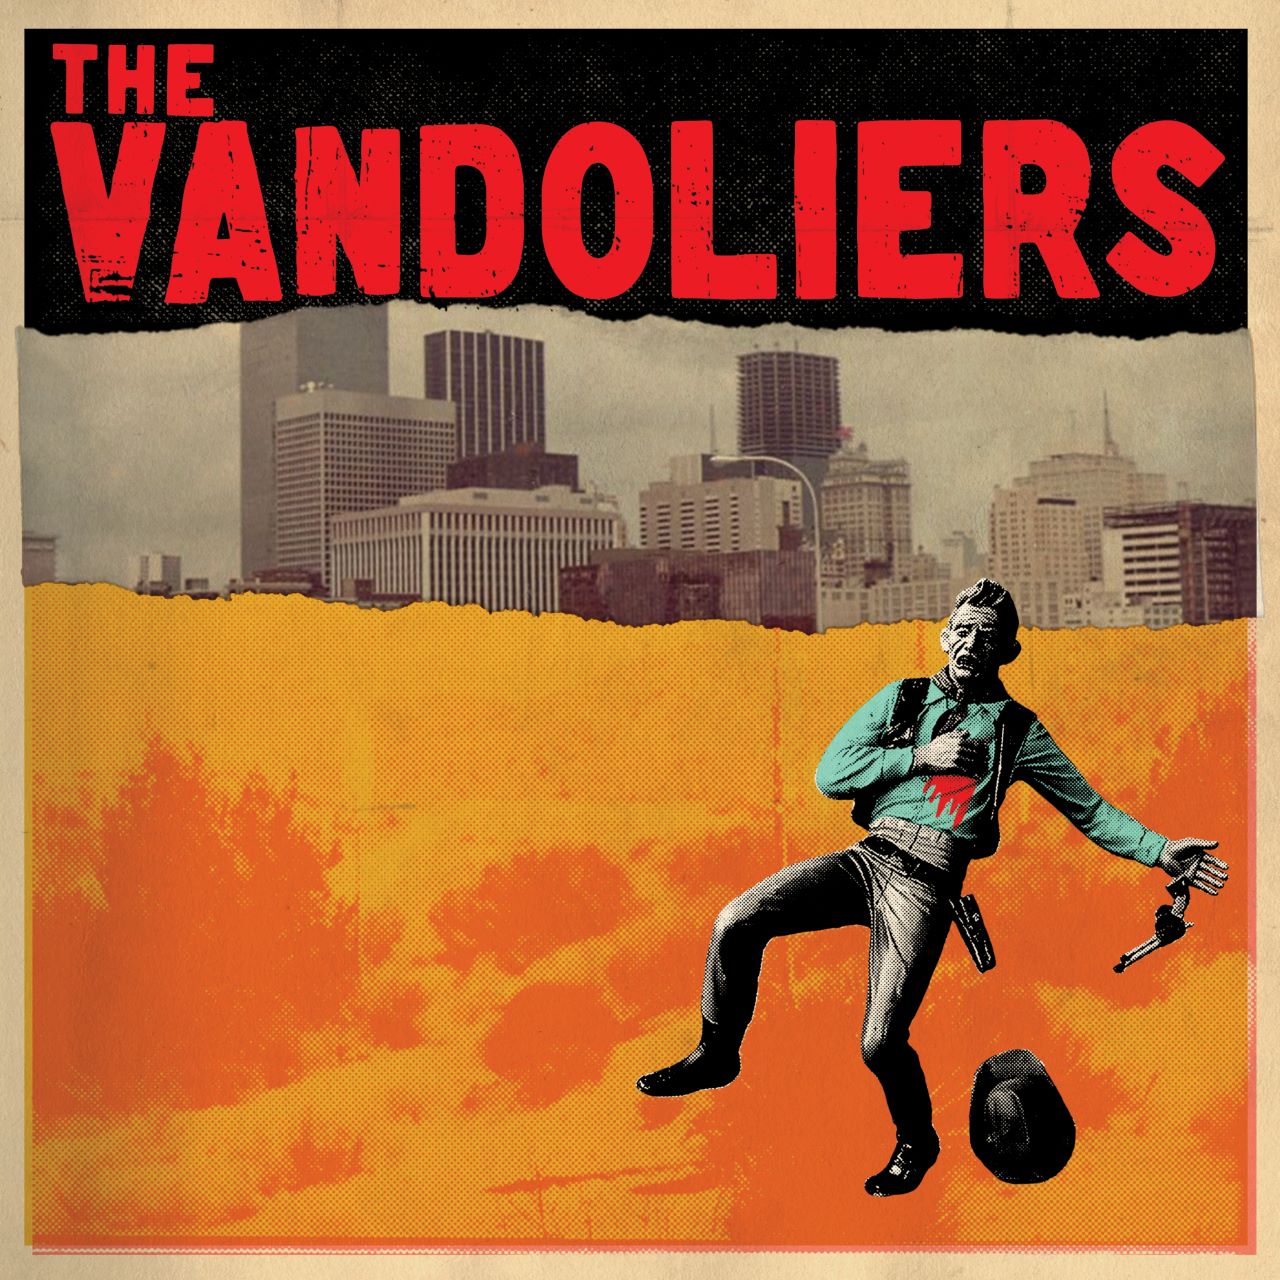 VANDOLIERS cover album